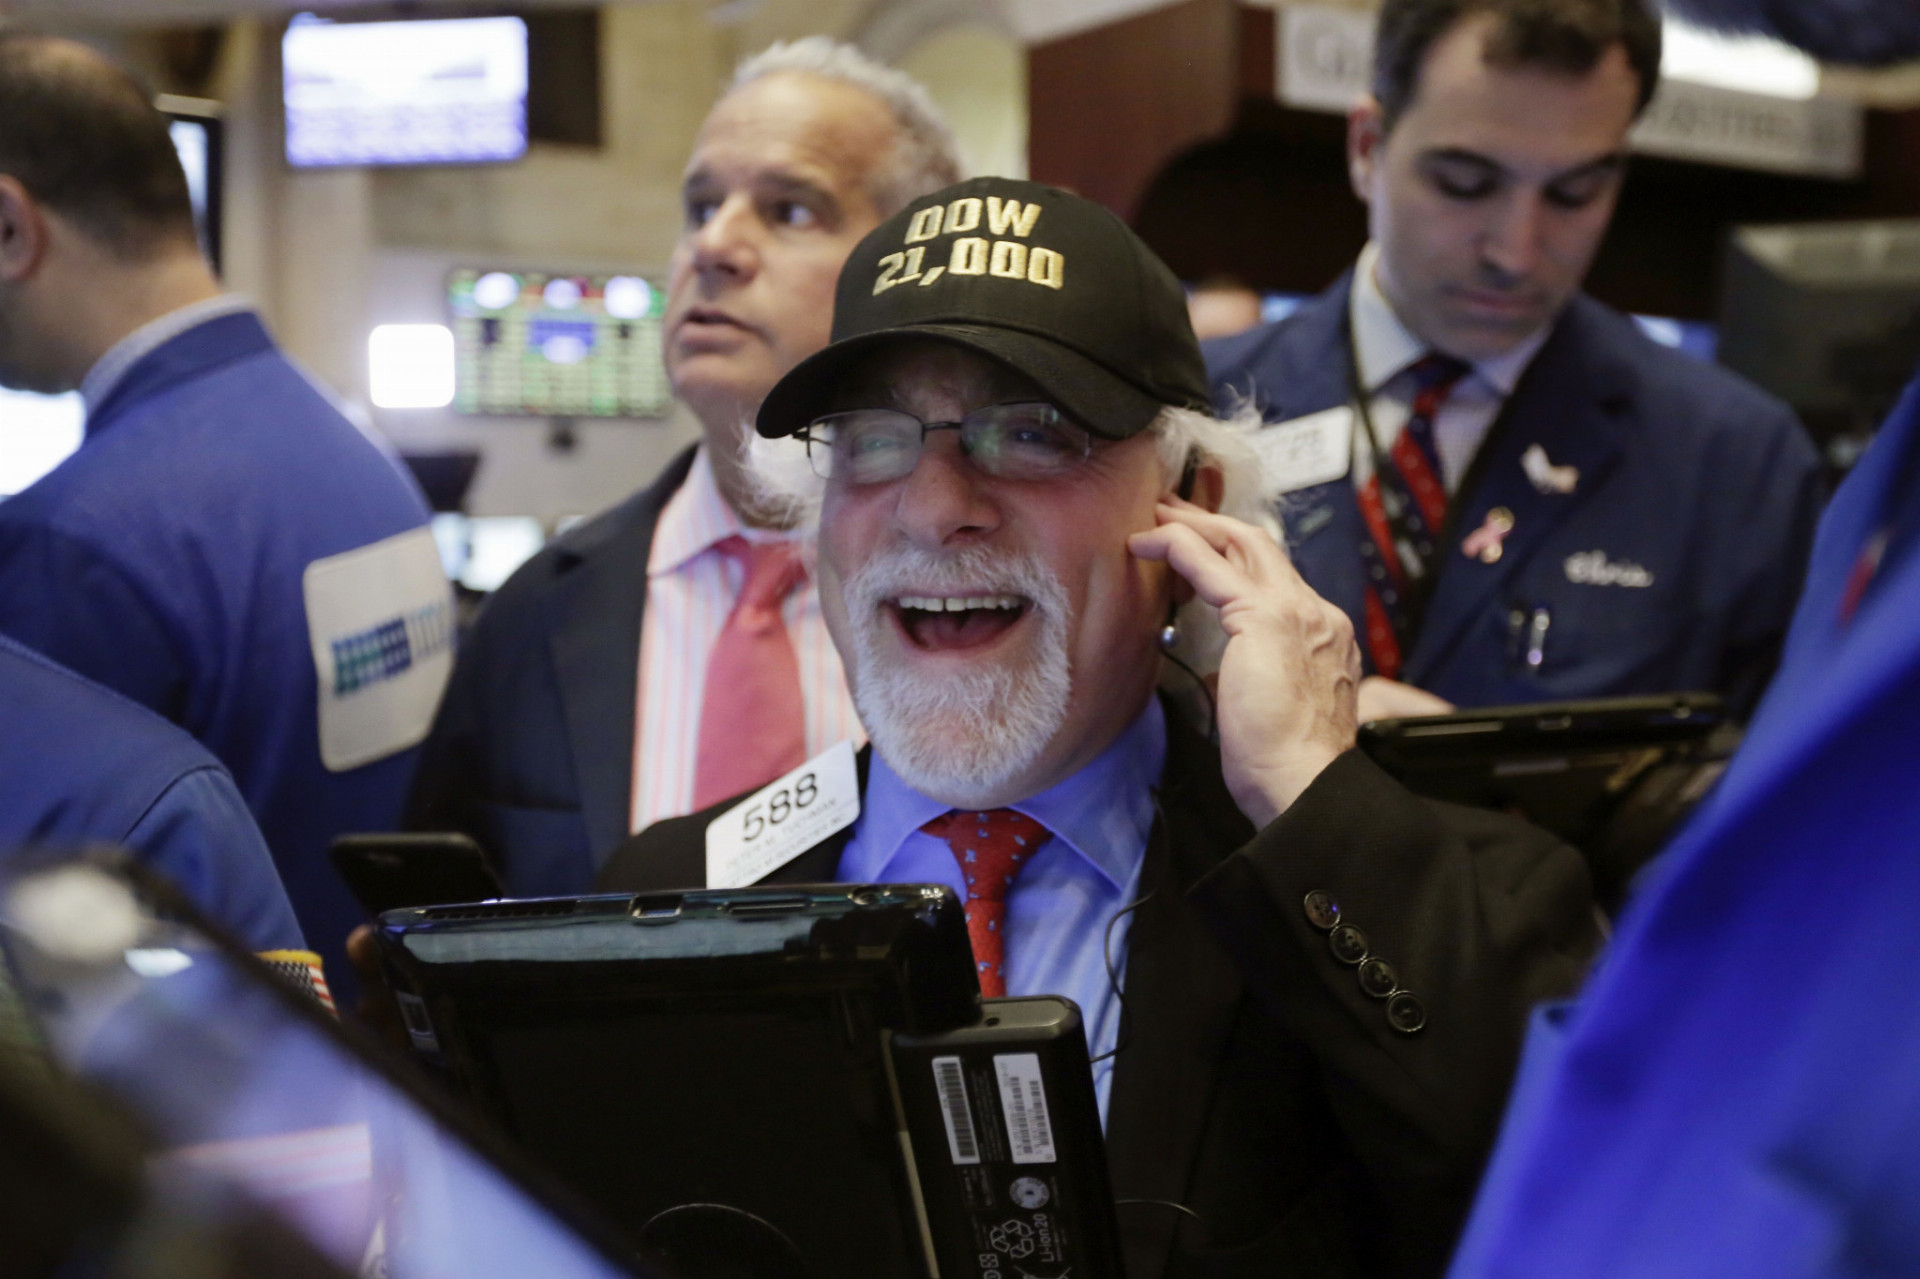 Na snímke newyorský burzový maklér Peter Tuchman má na hlave šiltovku s nápisom "Dow 21,000" po tom, čo sa kľúčový americký index Dow Jones Industrial prvýkrát vo svojej histórii dostal nad hranicu 21.000 bodov v stredu 1. marca 2017. 